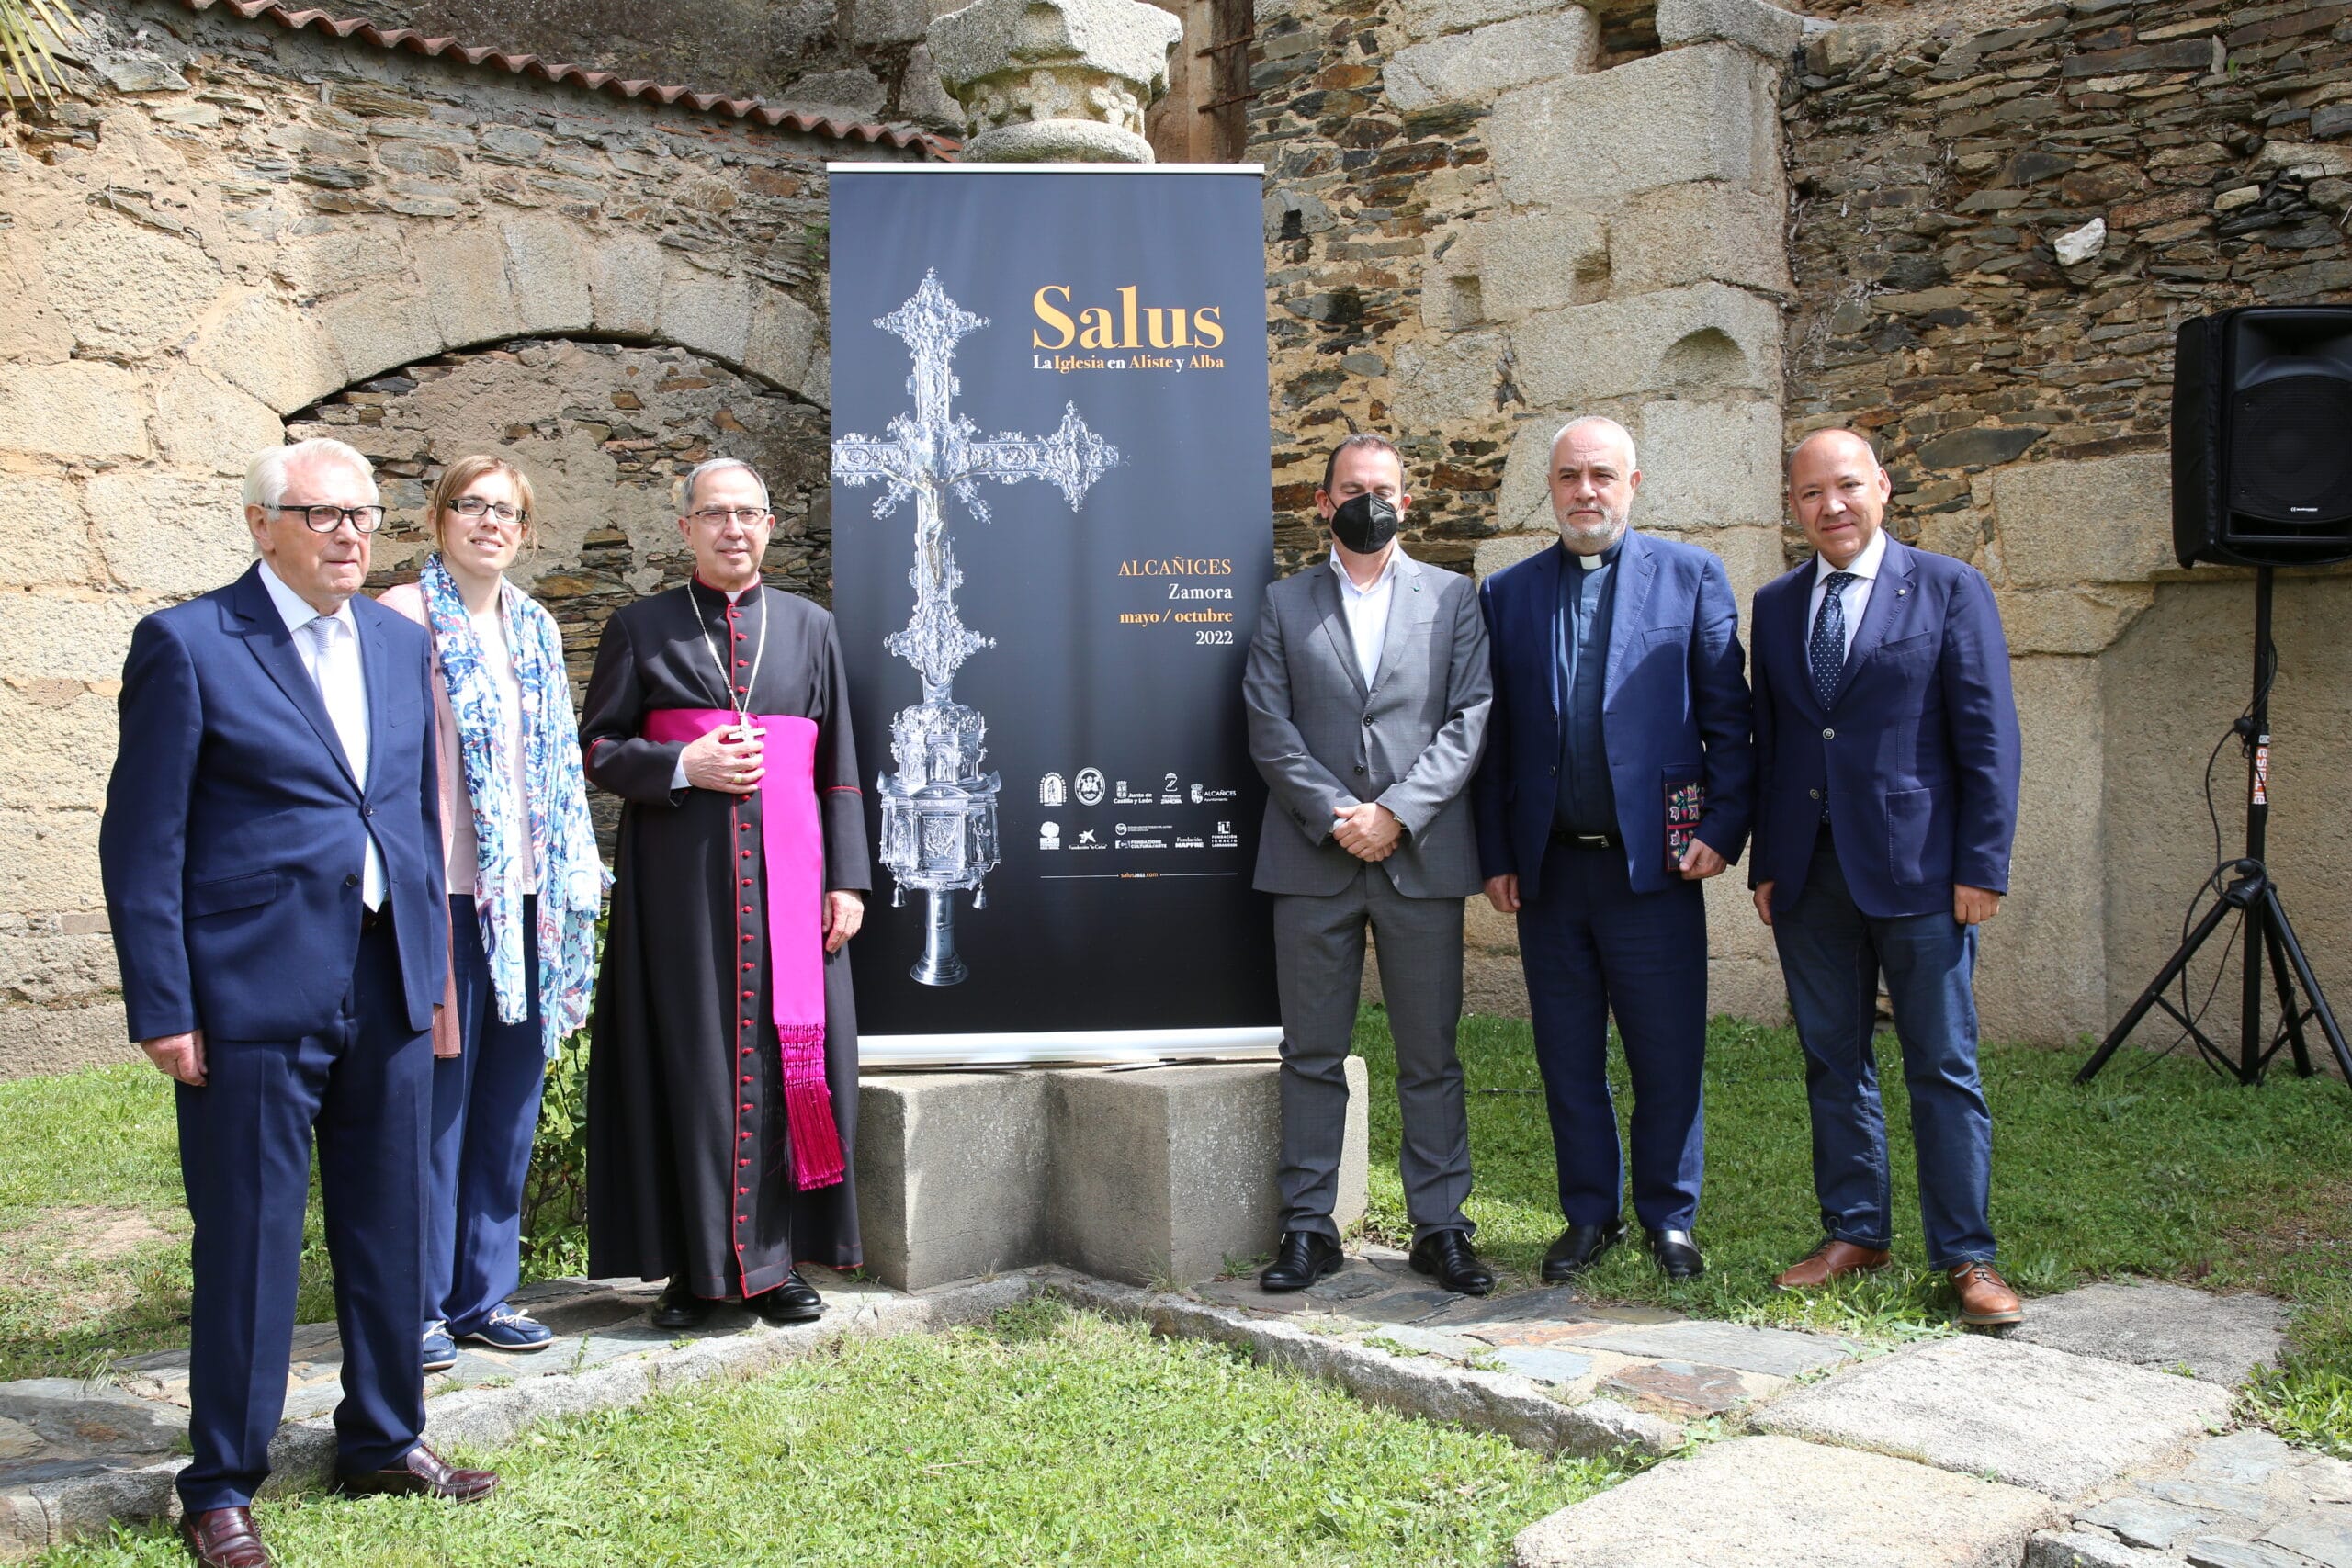 La exposición de arte religioso de Alcañices impulsa la ‘Salus’ turística de Zamora